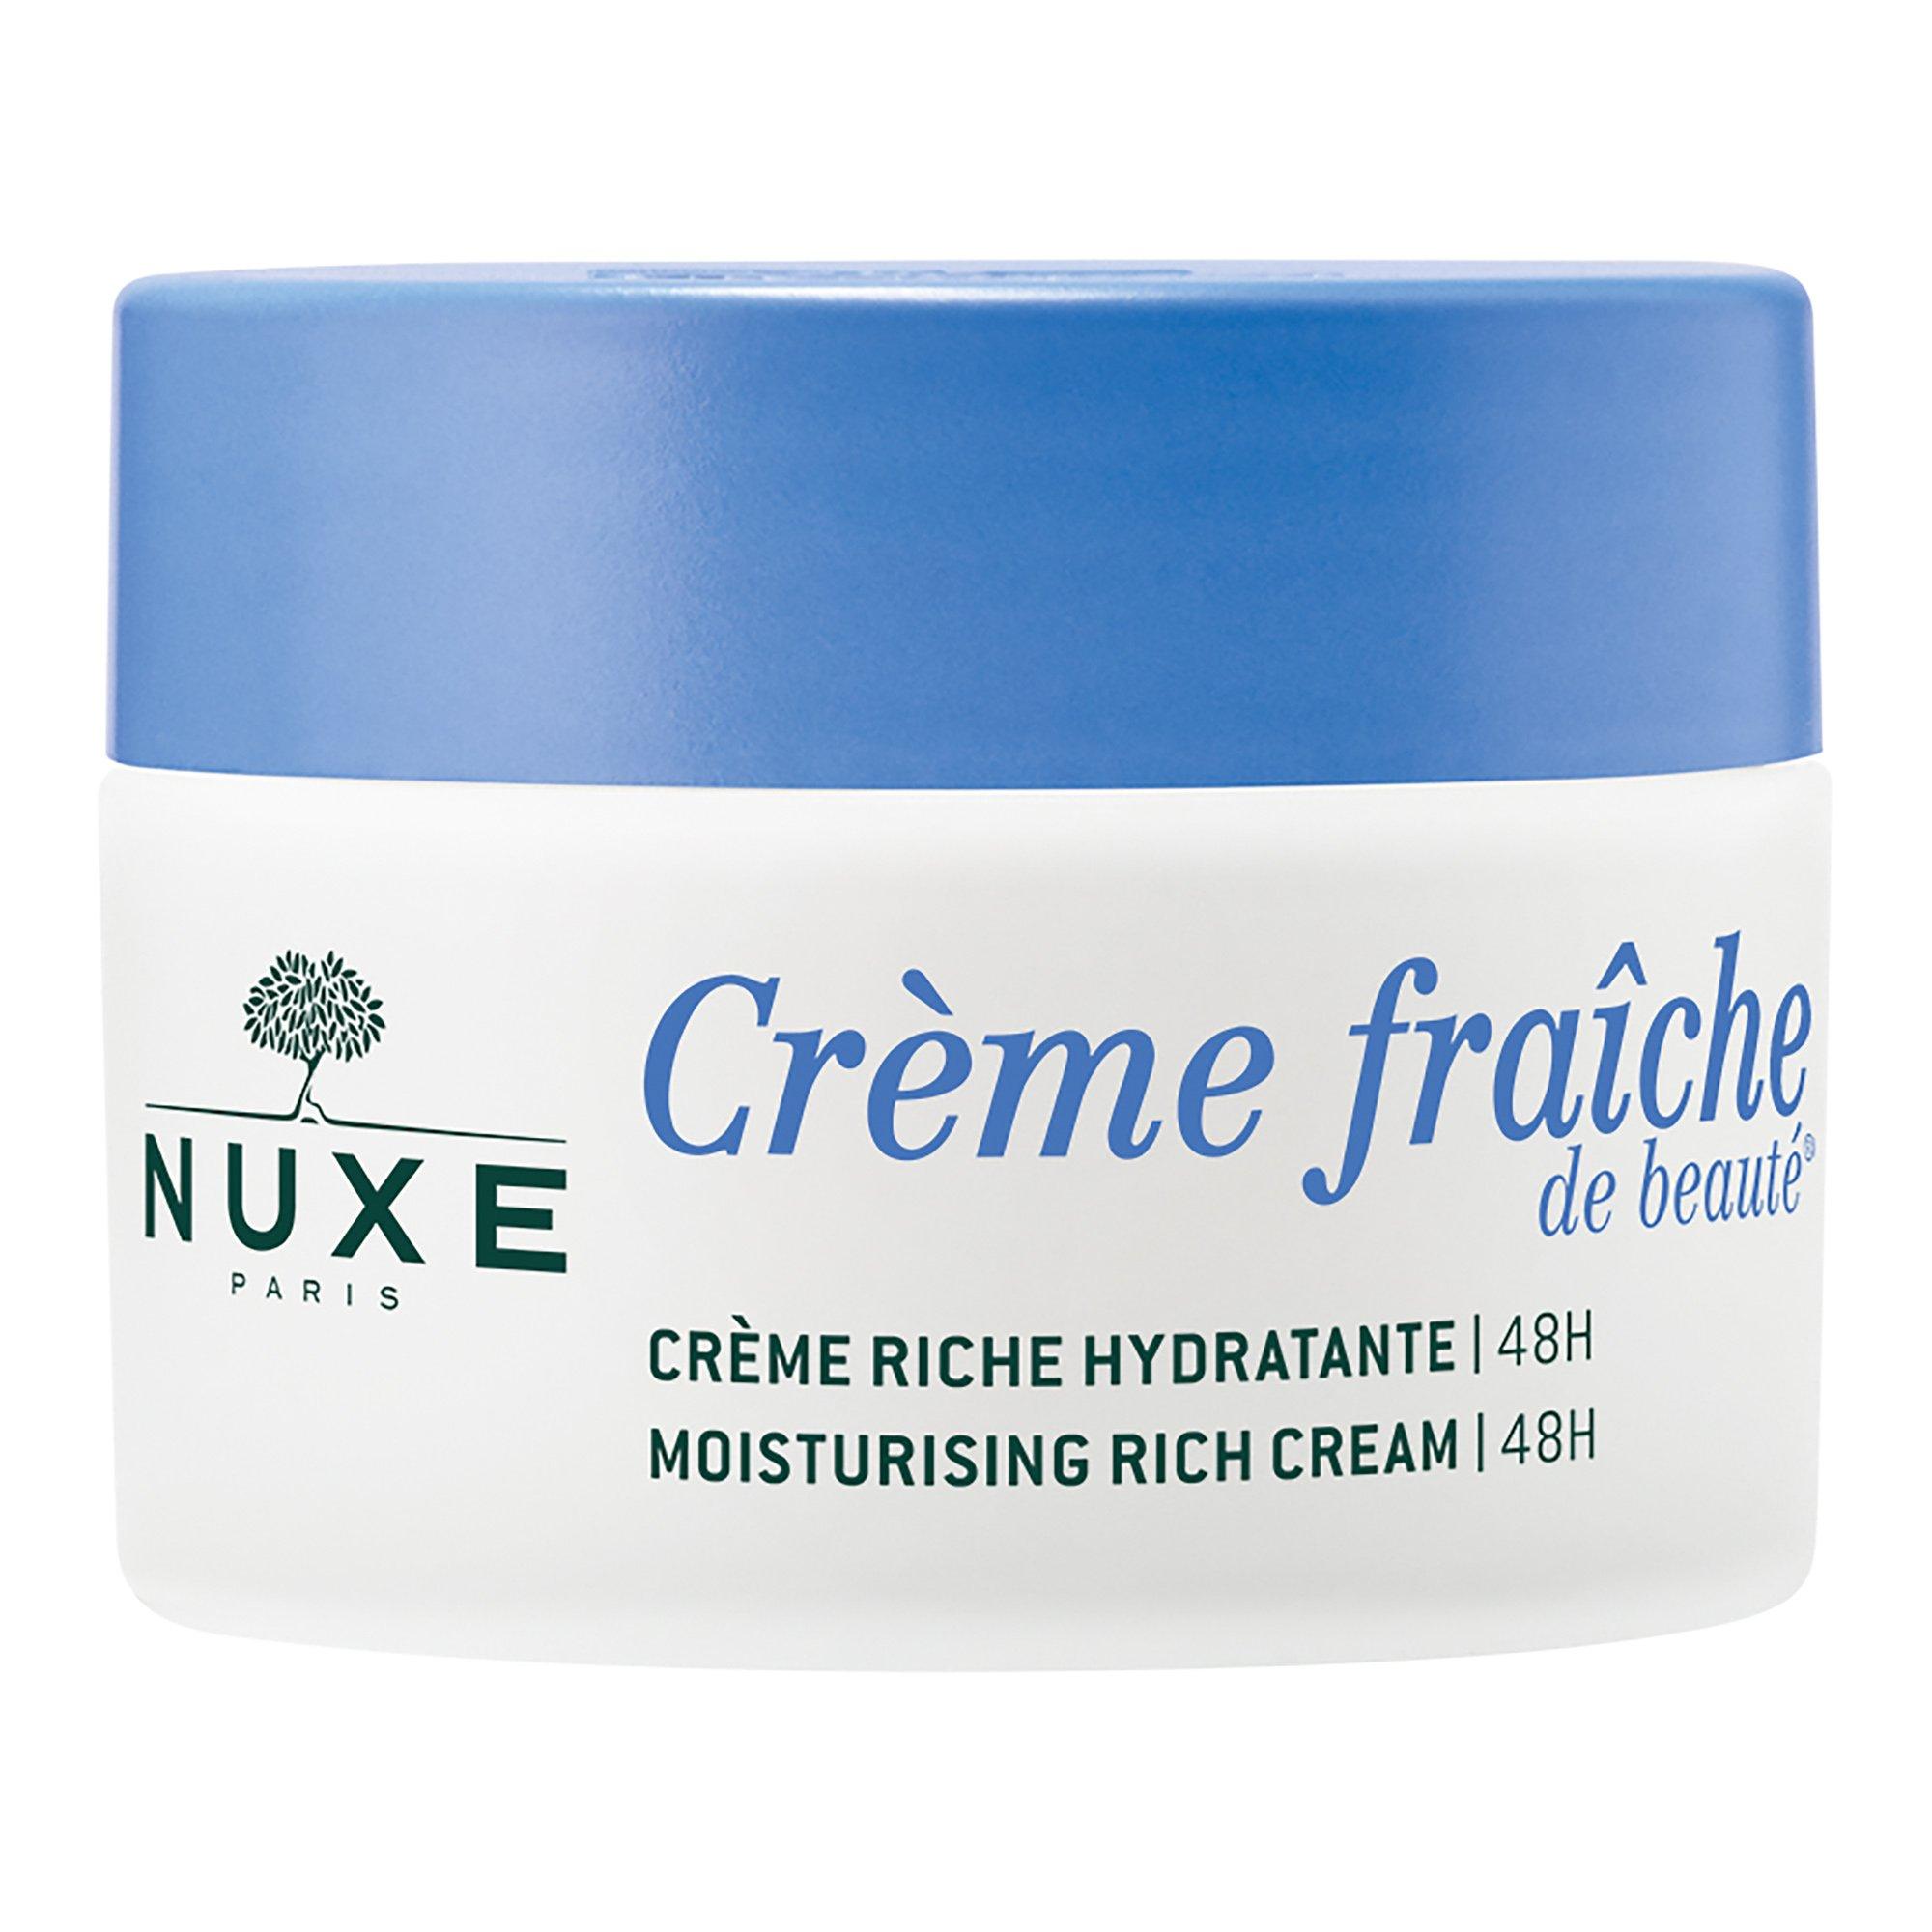 NUXE Crème Riche Hydratante 48H Crème fraîche de beauté® Crème Riche Hydratante 48h 